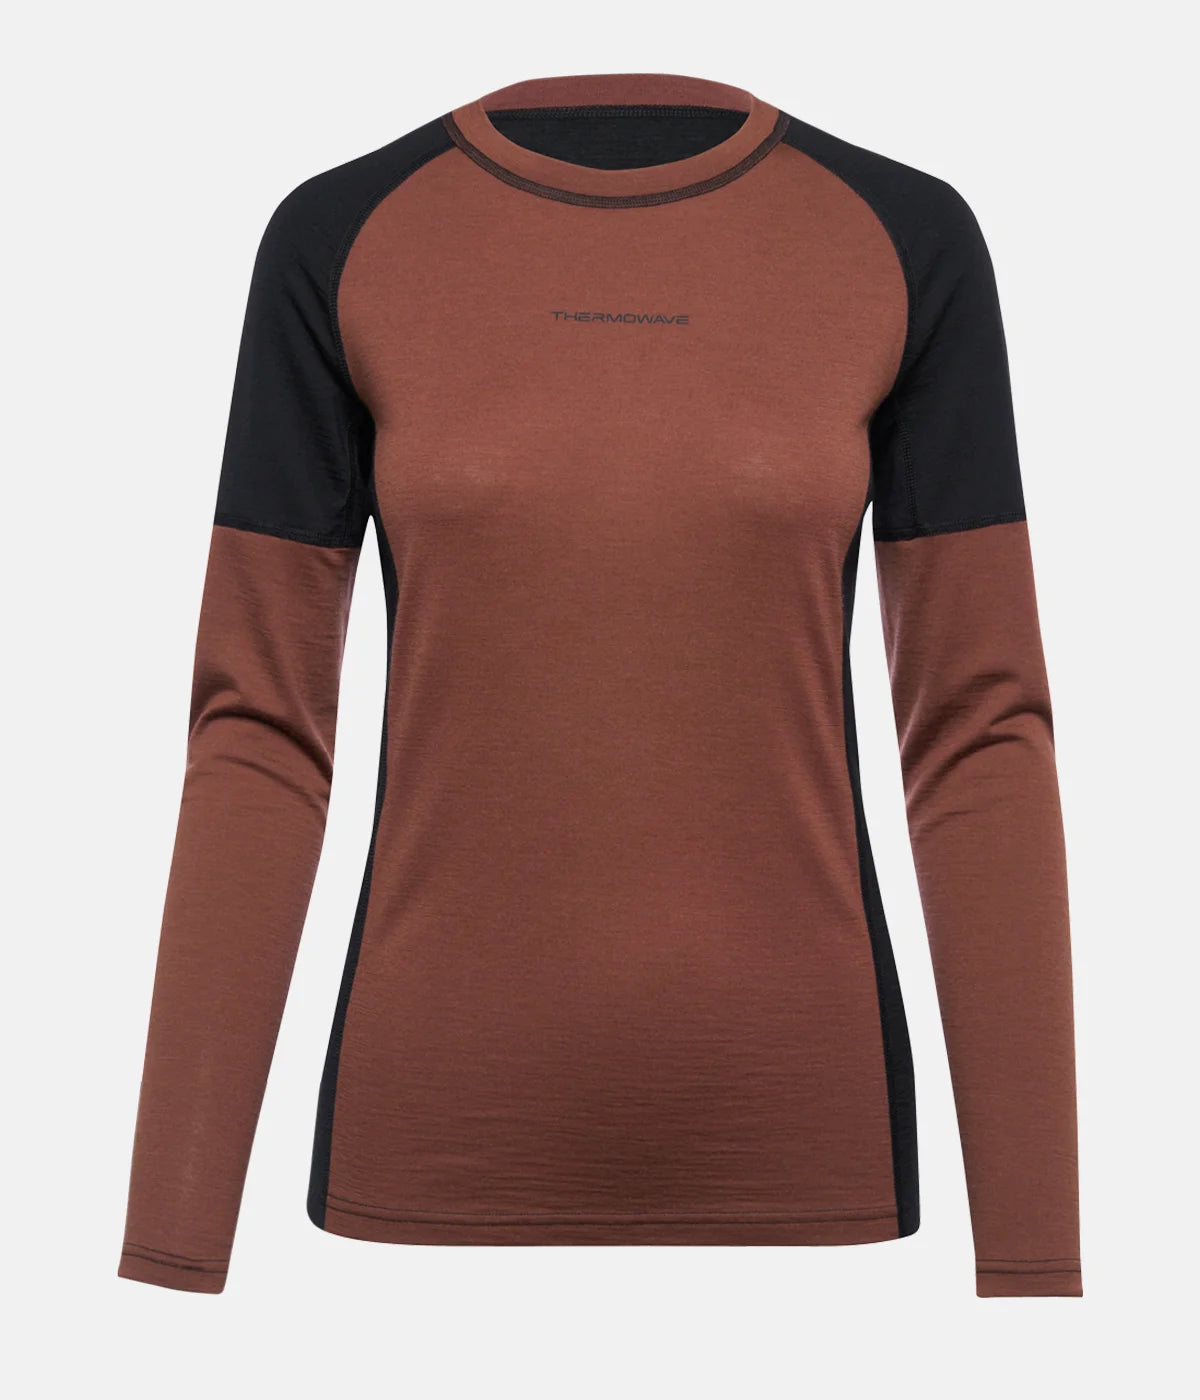 Women's Merino Warm Active Thermal LS Shirt